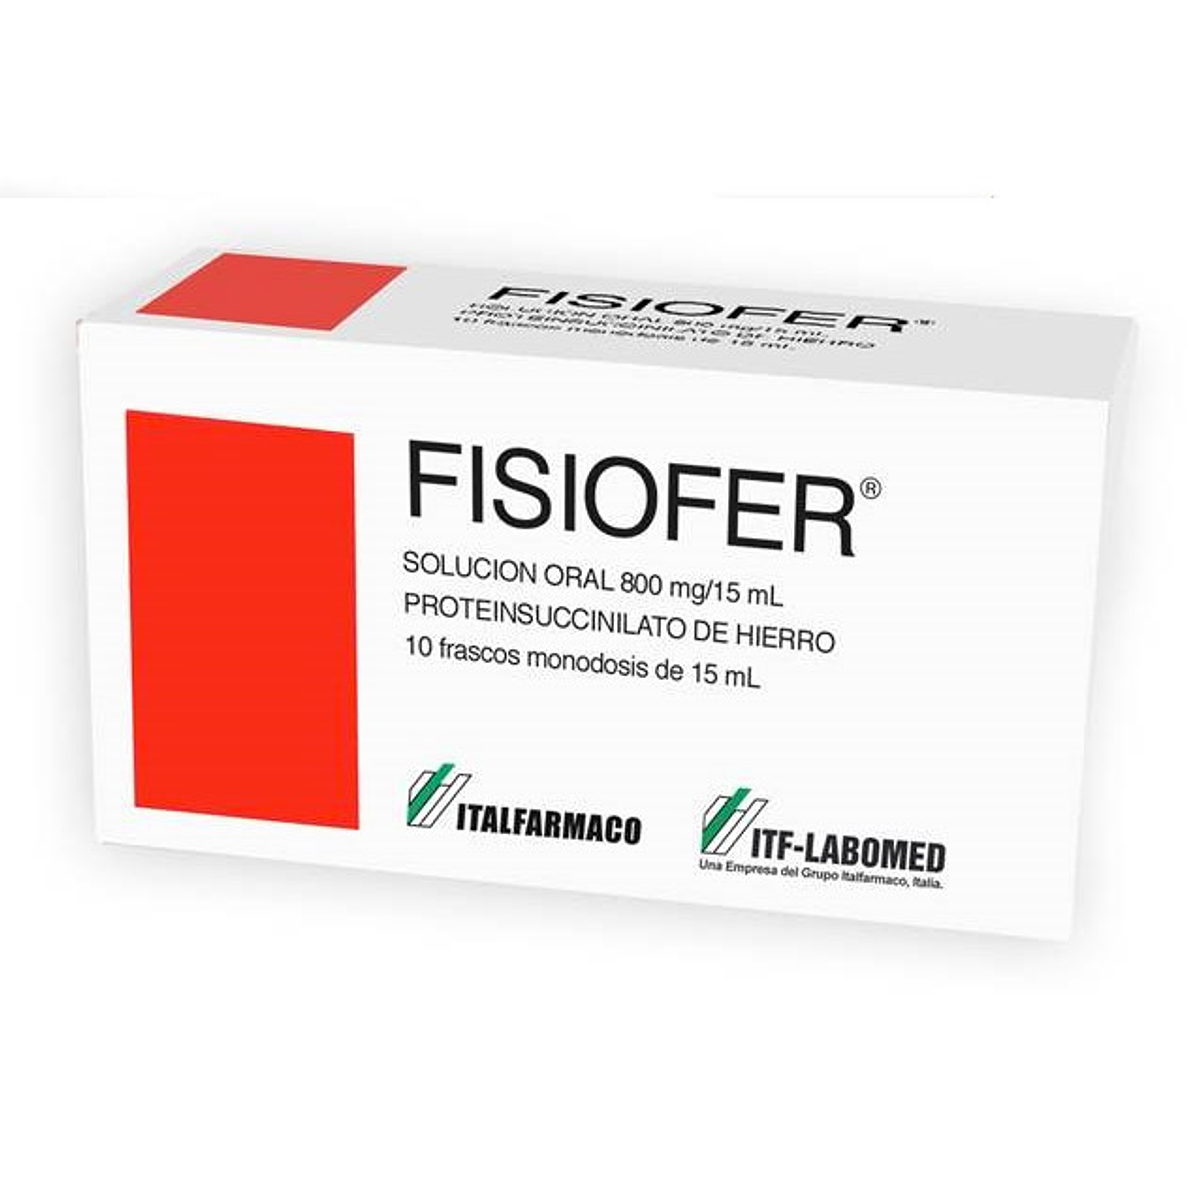 Fisiofer 800 mg / 15 ml 10 frascos 15 ml